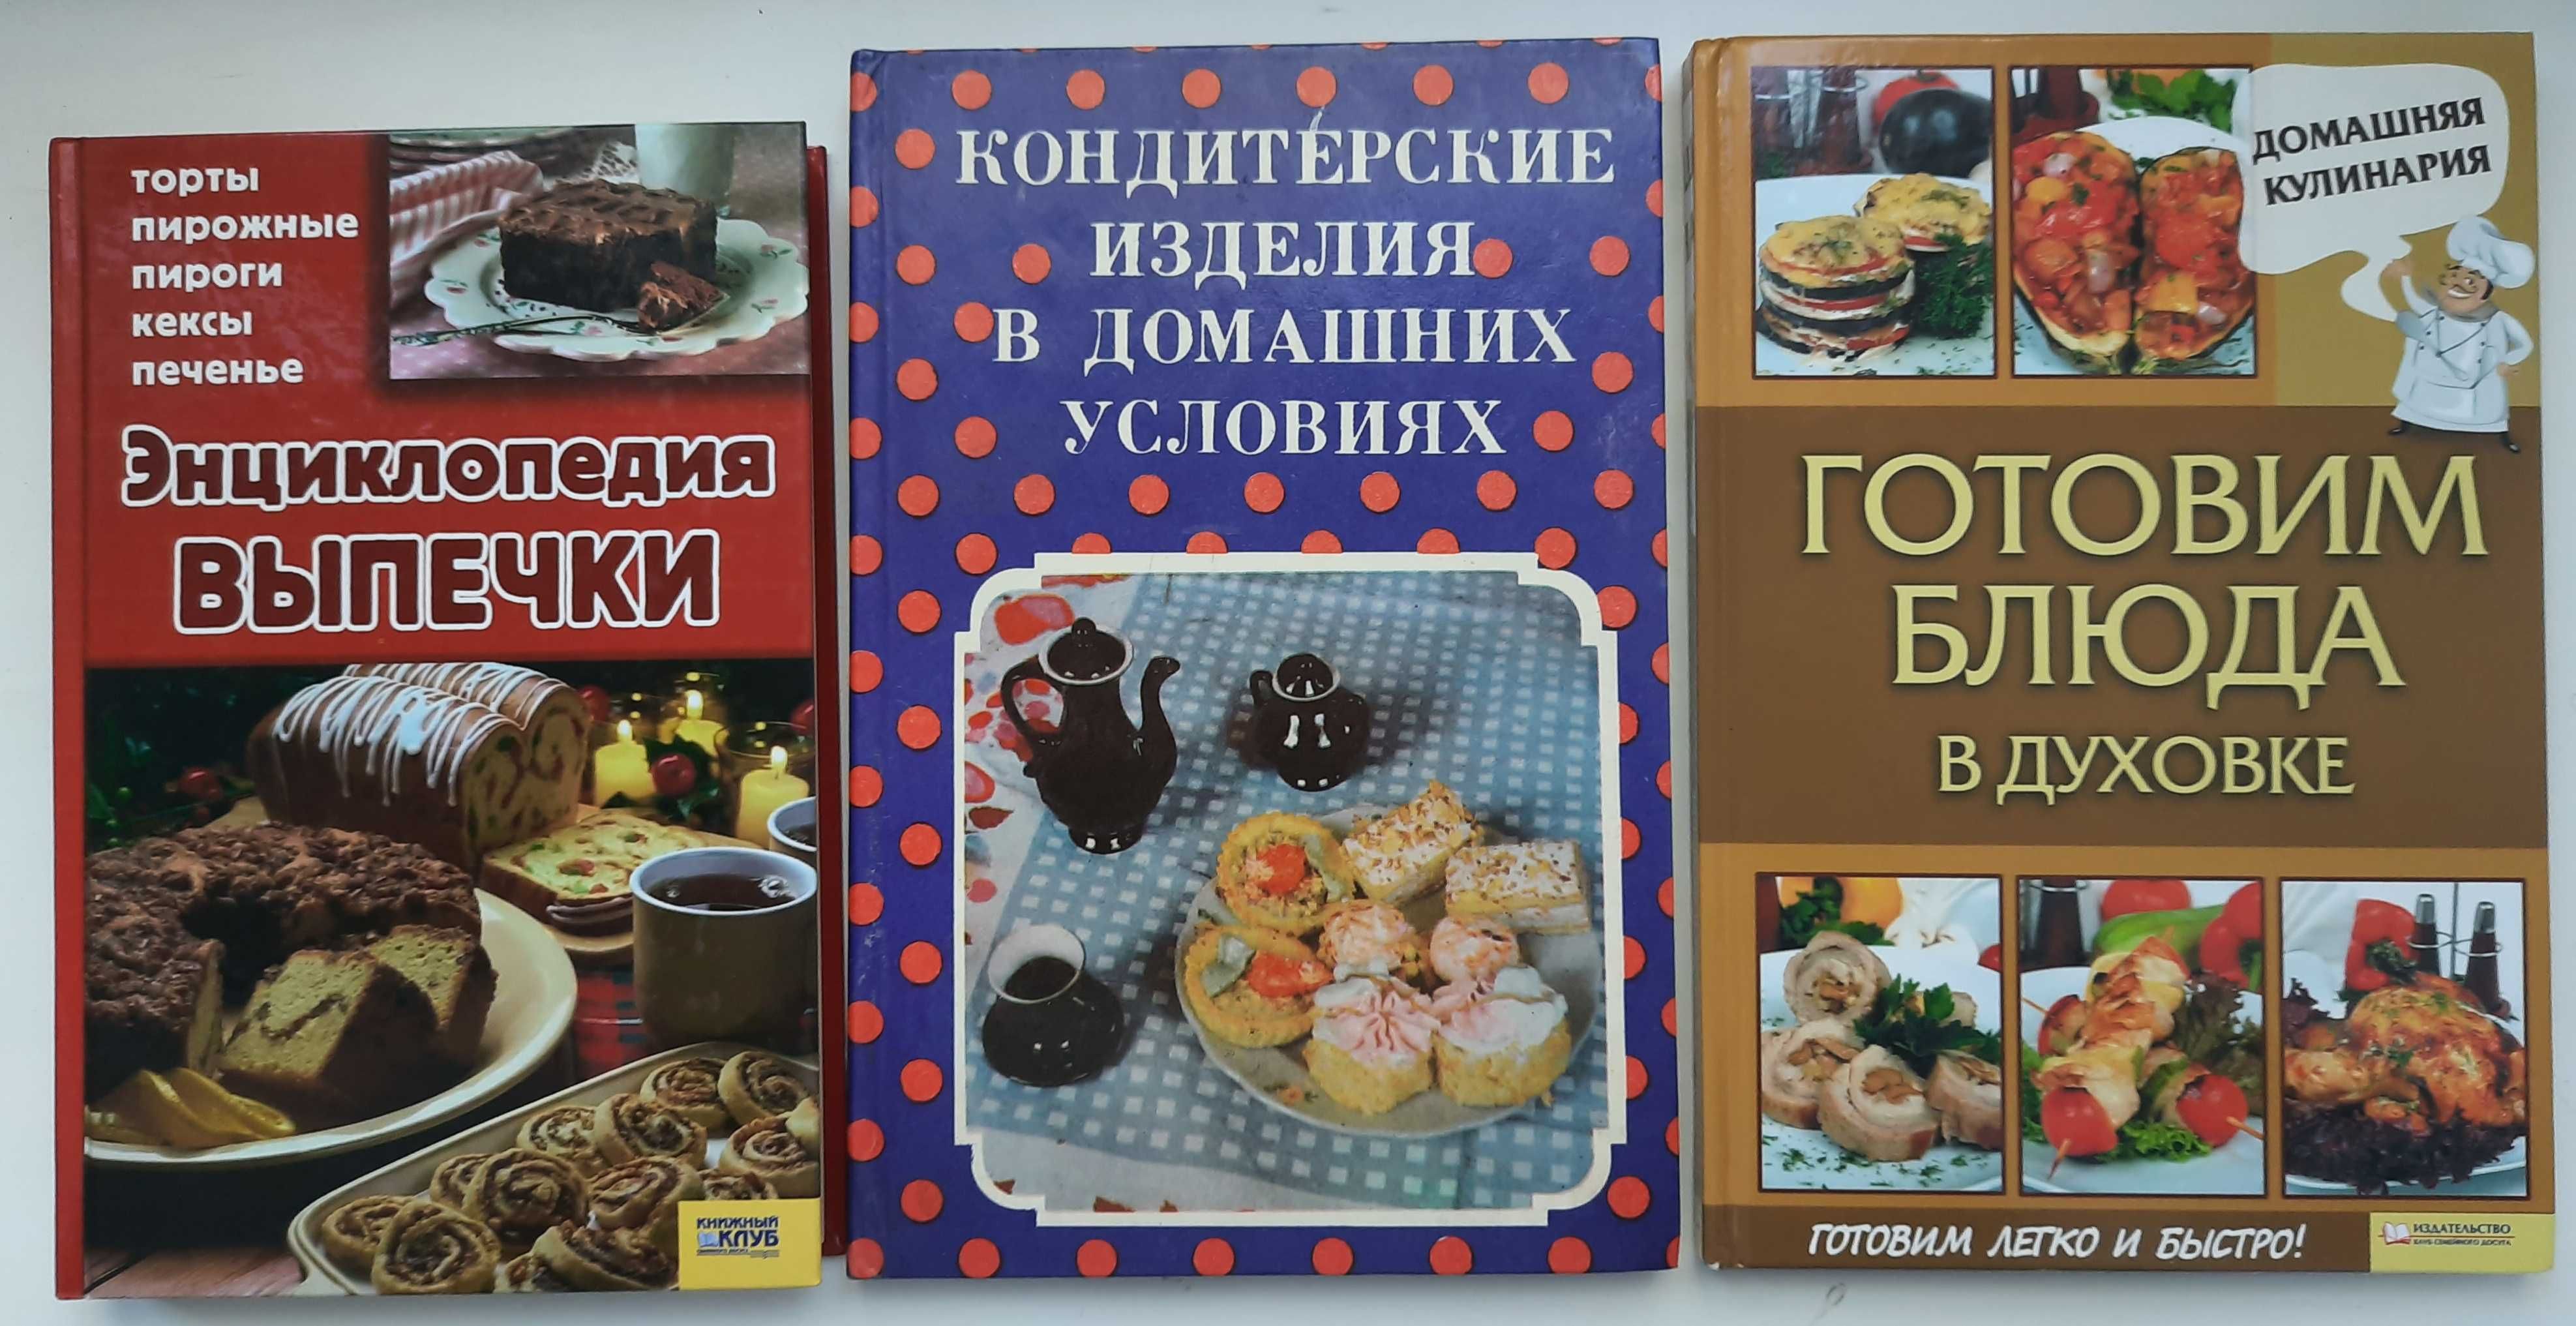 Кулинария: торты, салаты, тесто и др. Польская кухня